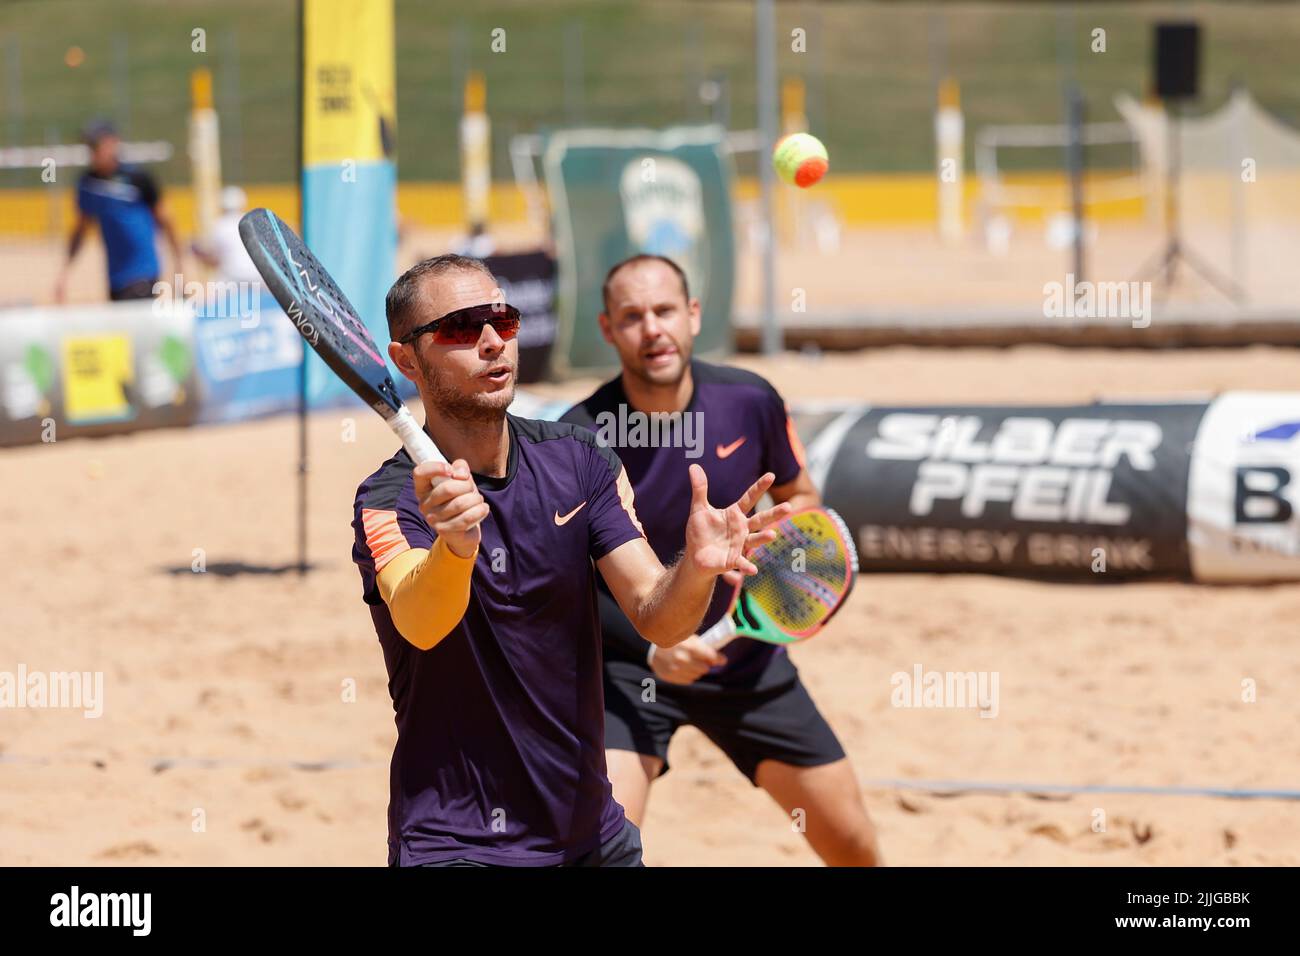 Campeonato de tenis de playa en Munich/Alemania Foto de stock